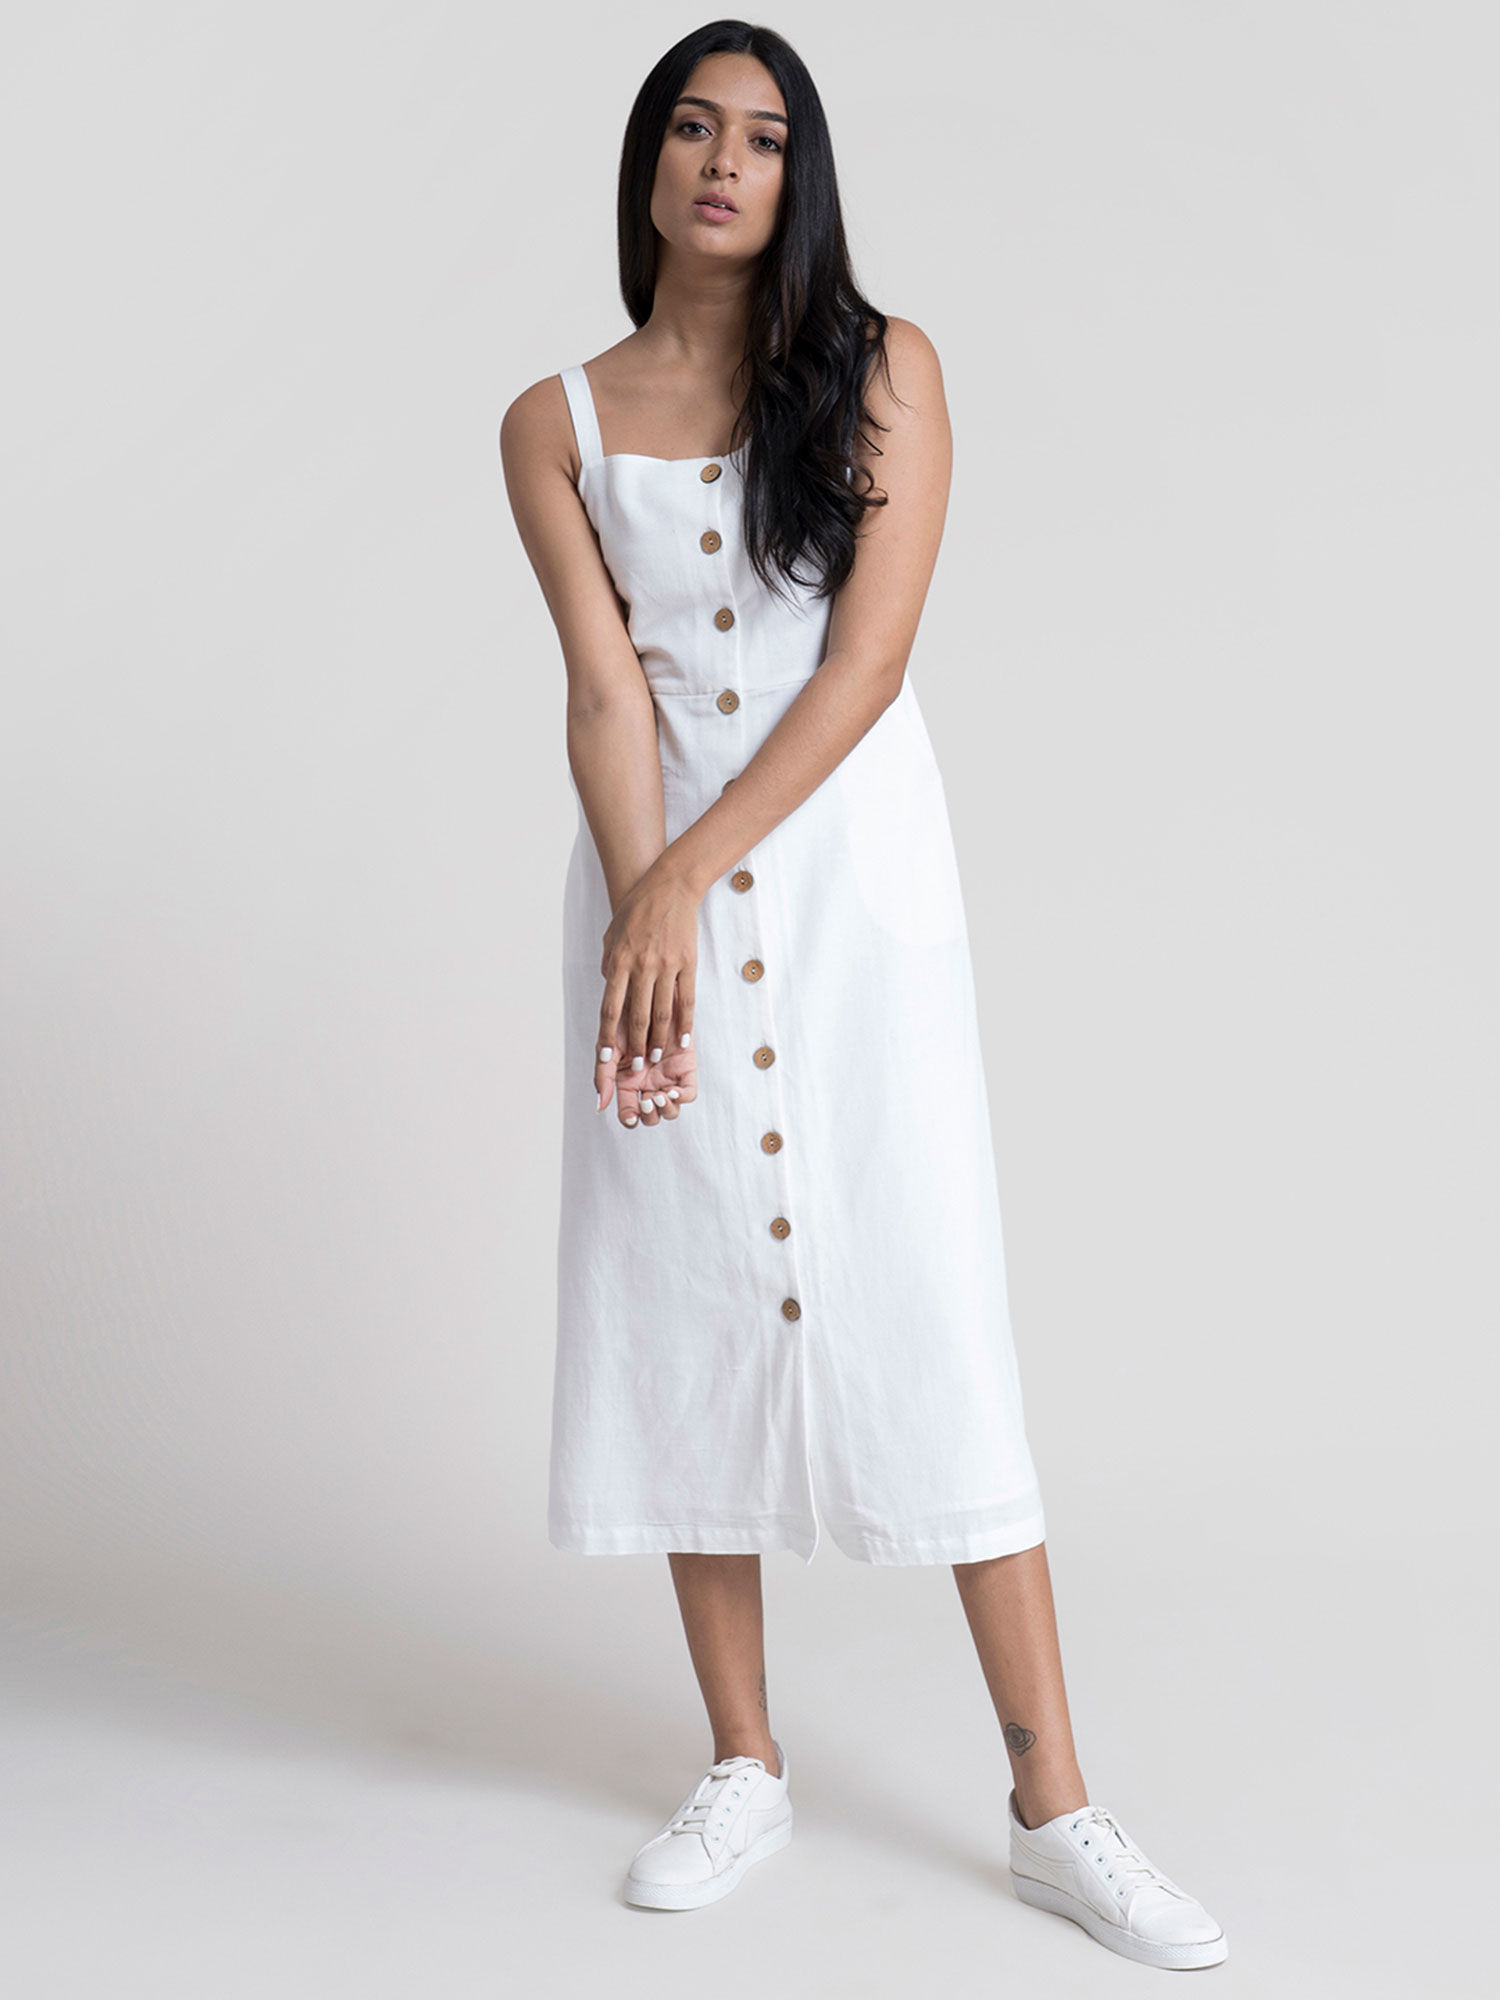 White dresses for women: Radiant in White插图4